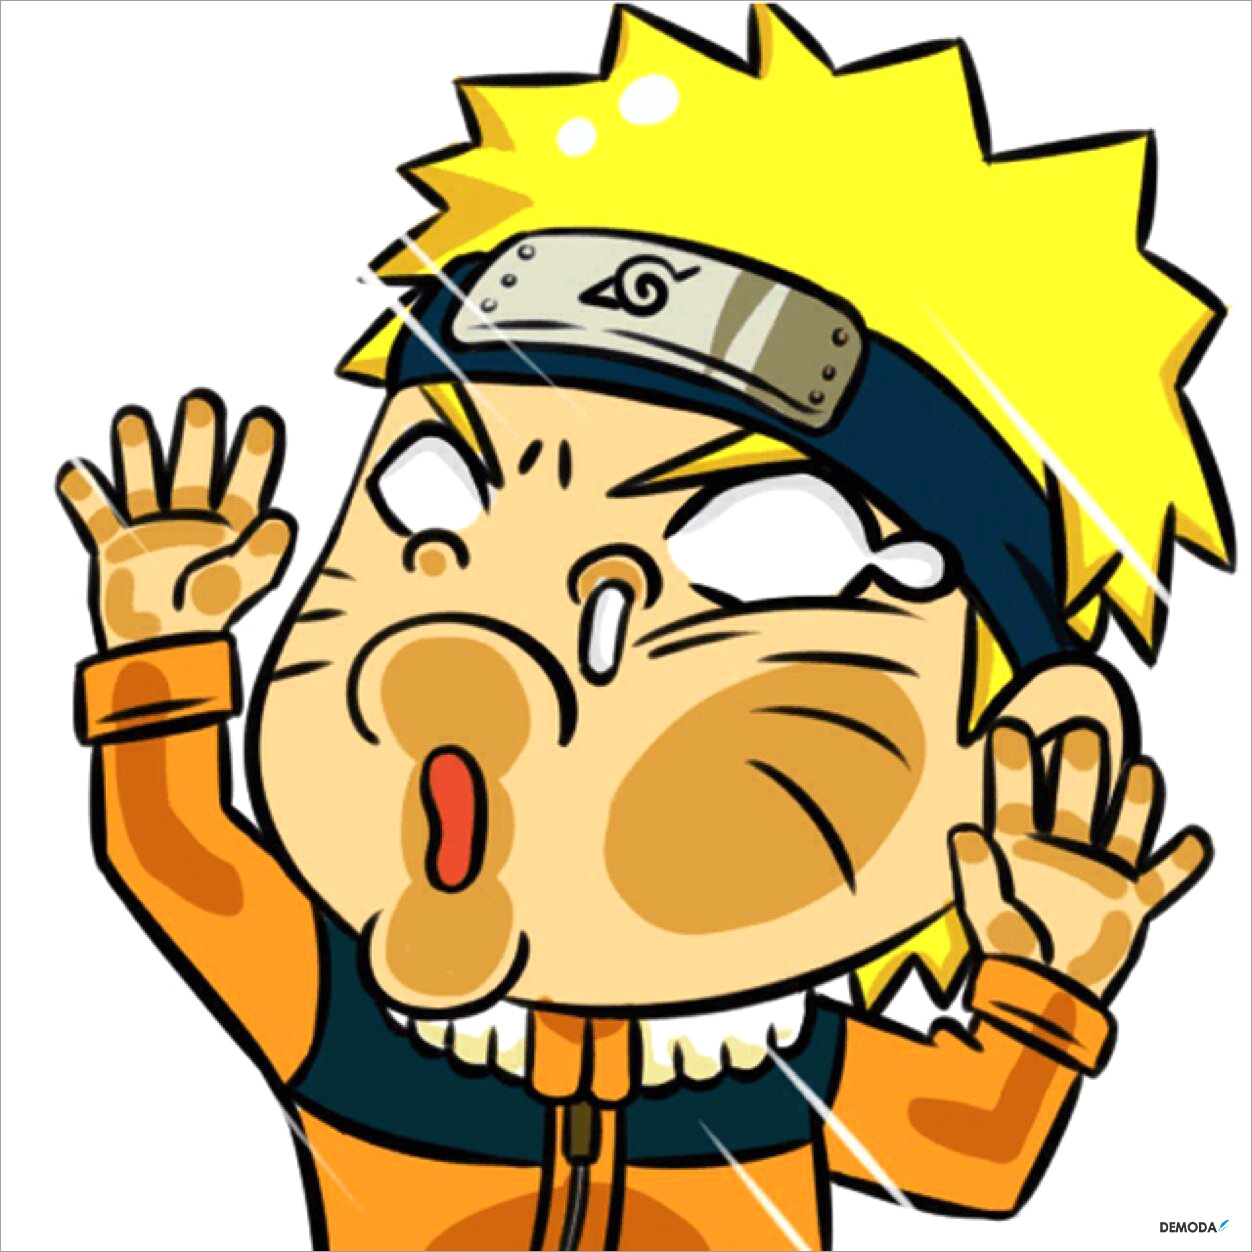 Naruto chế hài hước: Hãy xem những bức ảnh độc đáo và vô cùng hài hước về nhân vật Naruto chế. Bạn sẽ bật cười thích thú với những trò đùa dí dỏm và những màn biến hóa đầy sáng tạo của các fan hâm mộ.